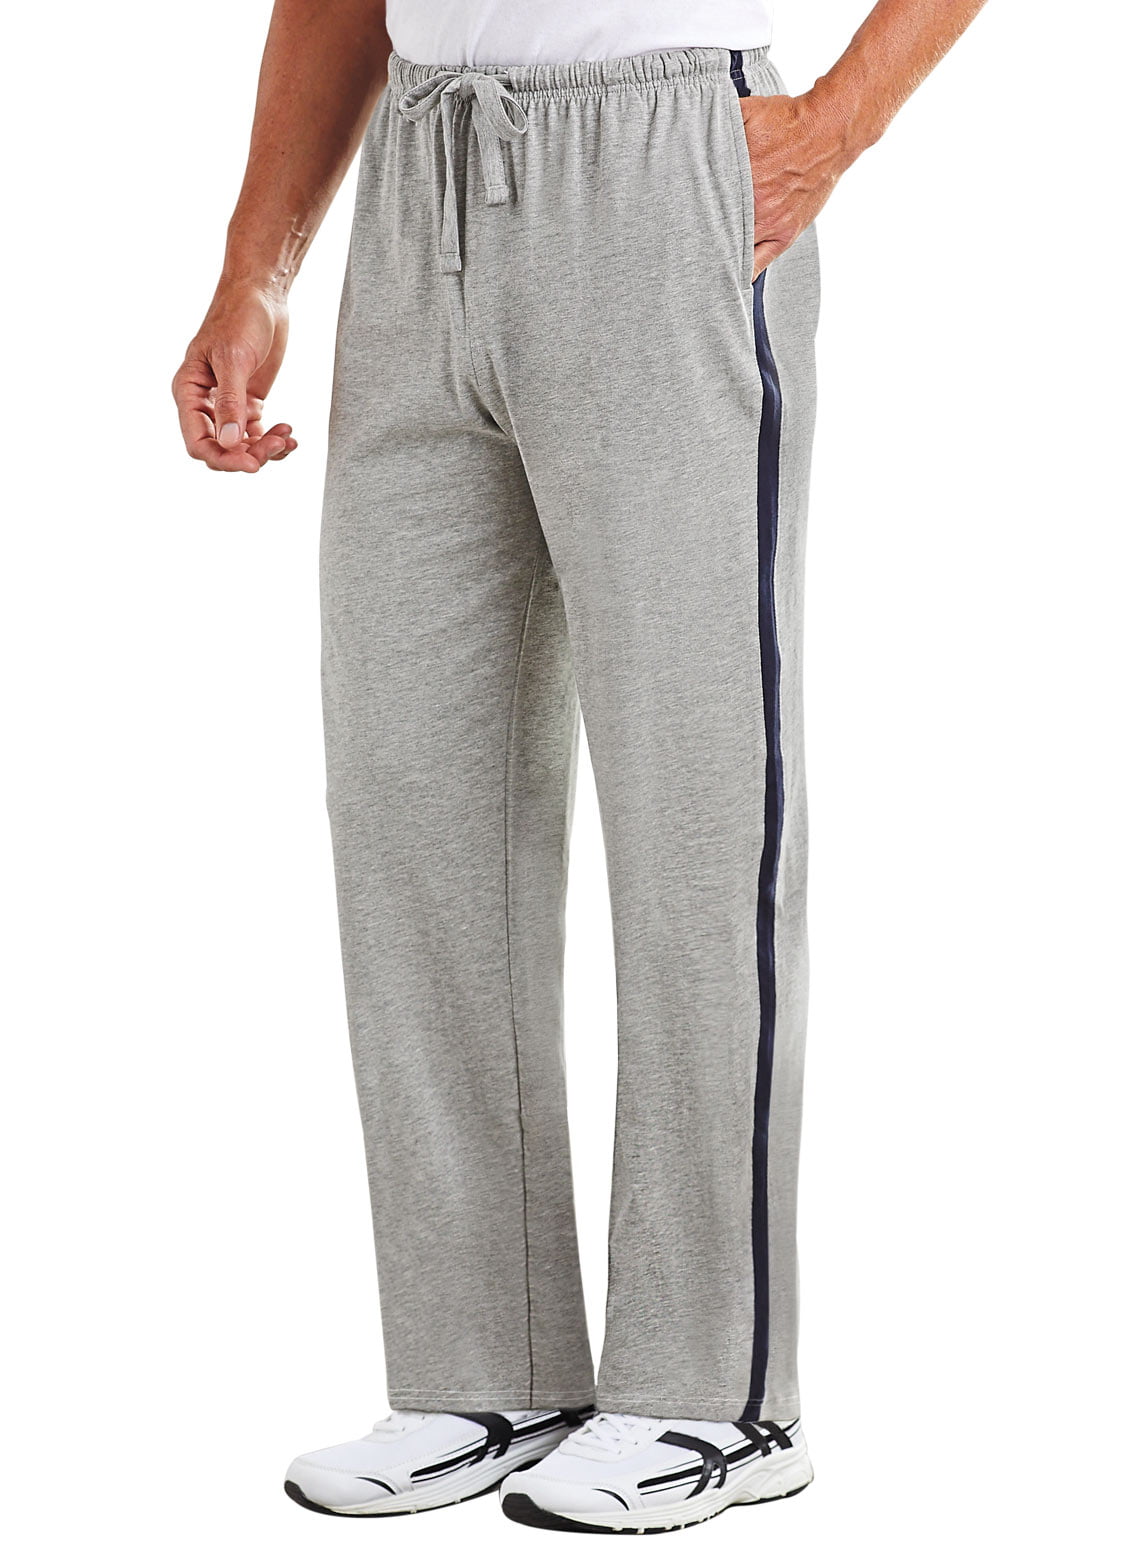 Men's Side-Stripe Pants by Freedom Fit Zone - Walmart.com